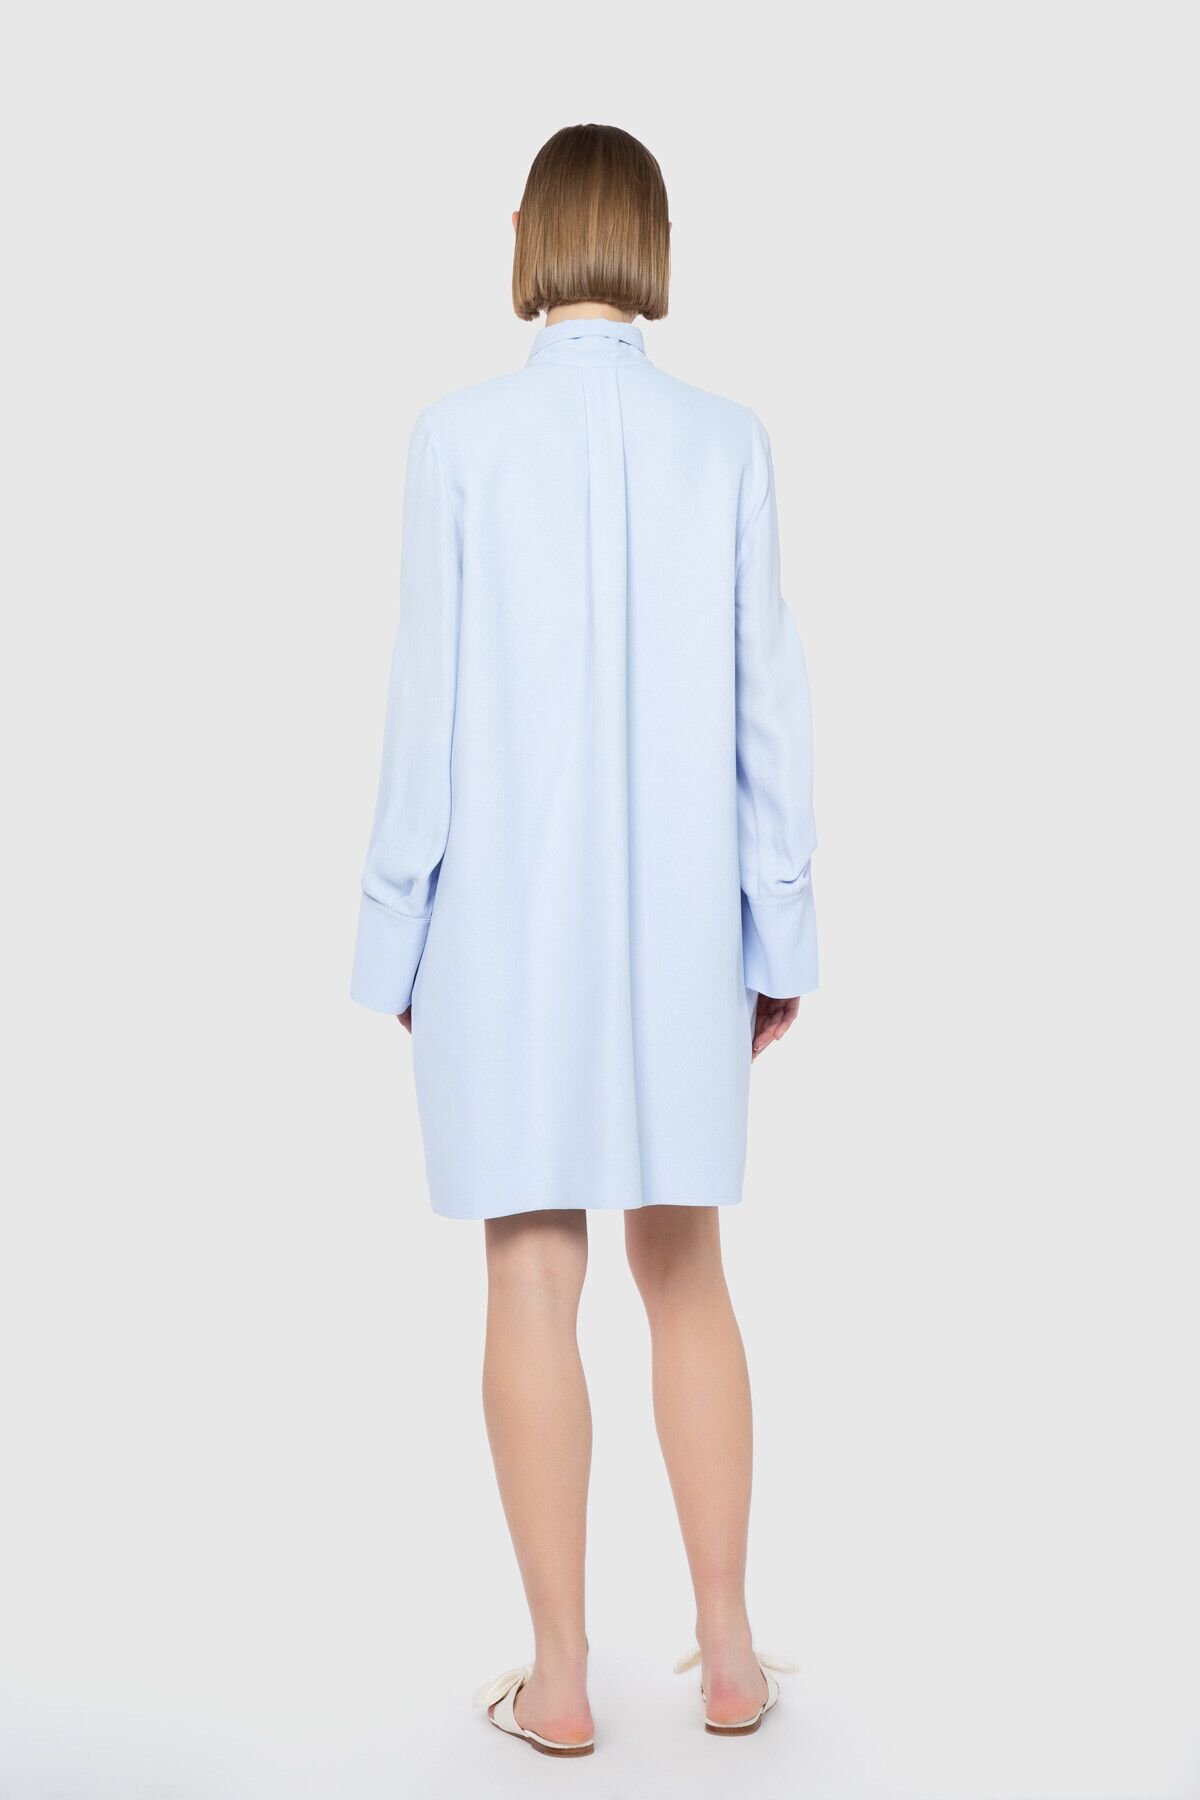 Dice Kayek İşlemeli Yırtmaç Kol Detaylı Diz Üstü Mavi Tasarım Elbise